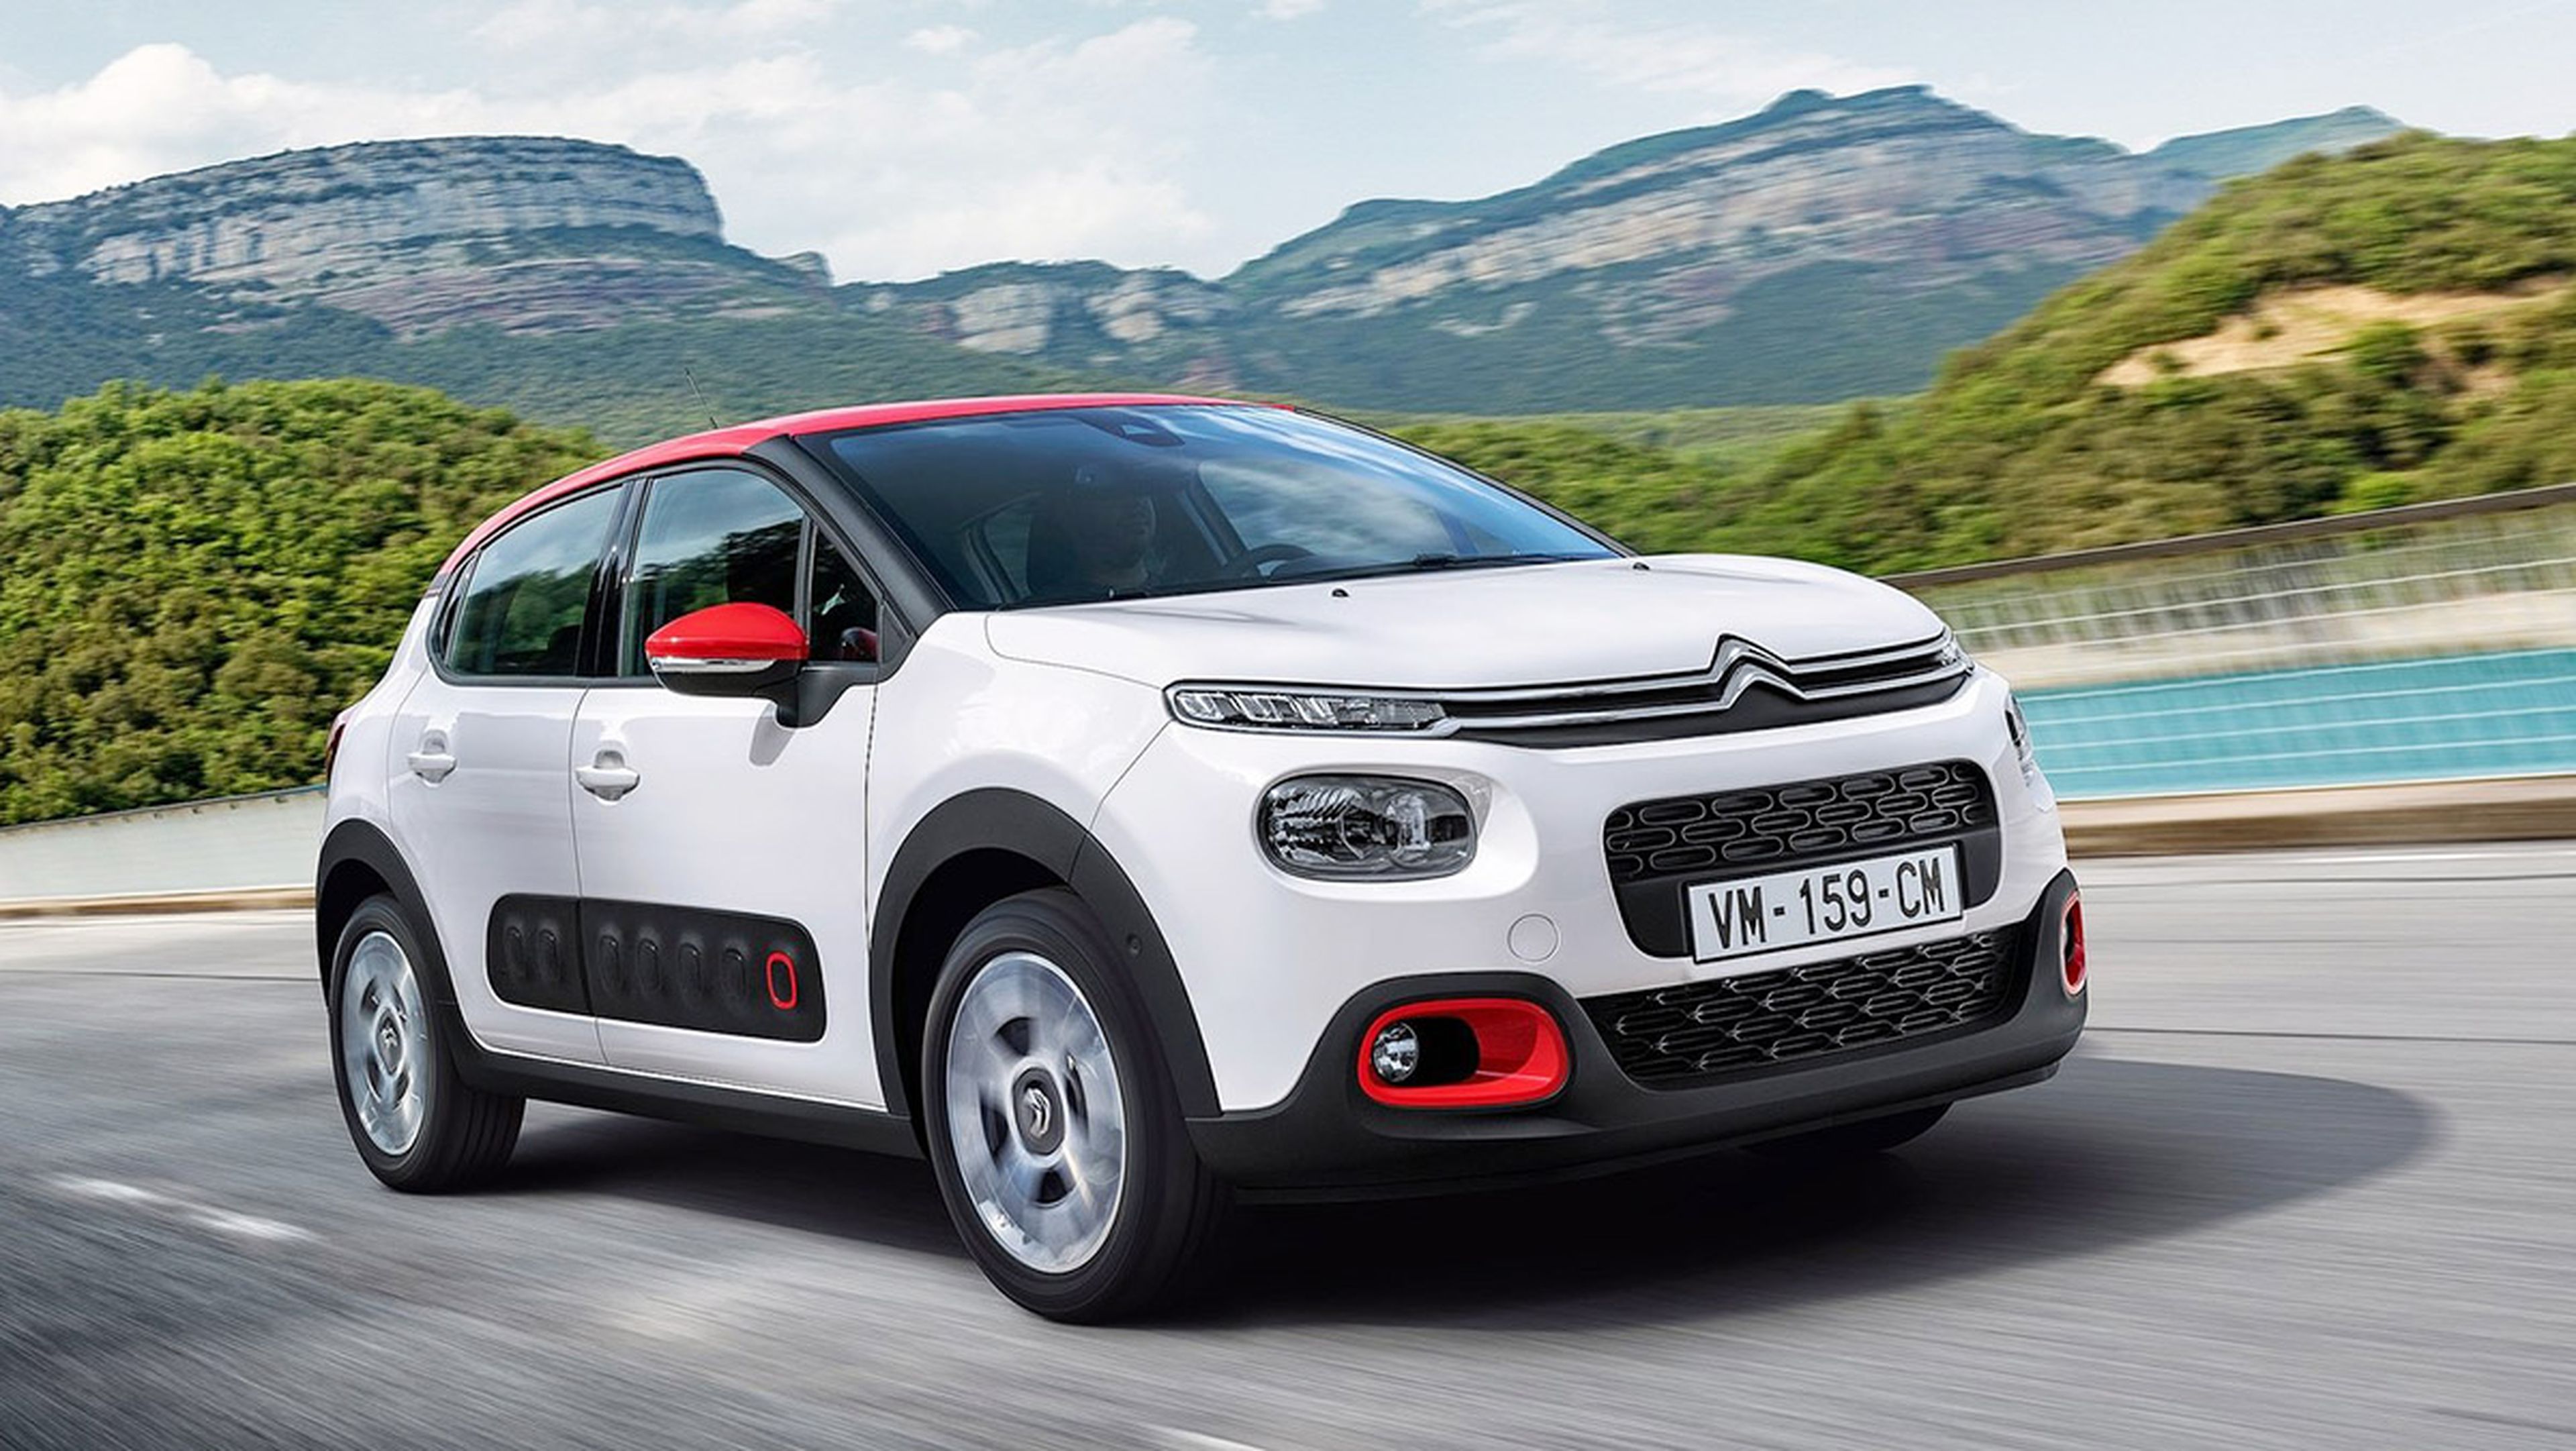 Coches nuevos entre 9.000 y 12.000 euros - Citroën C3